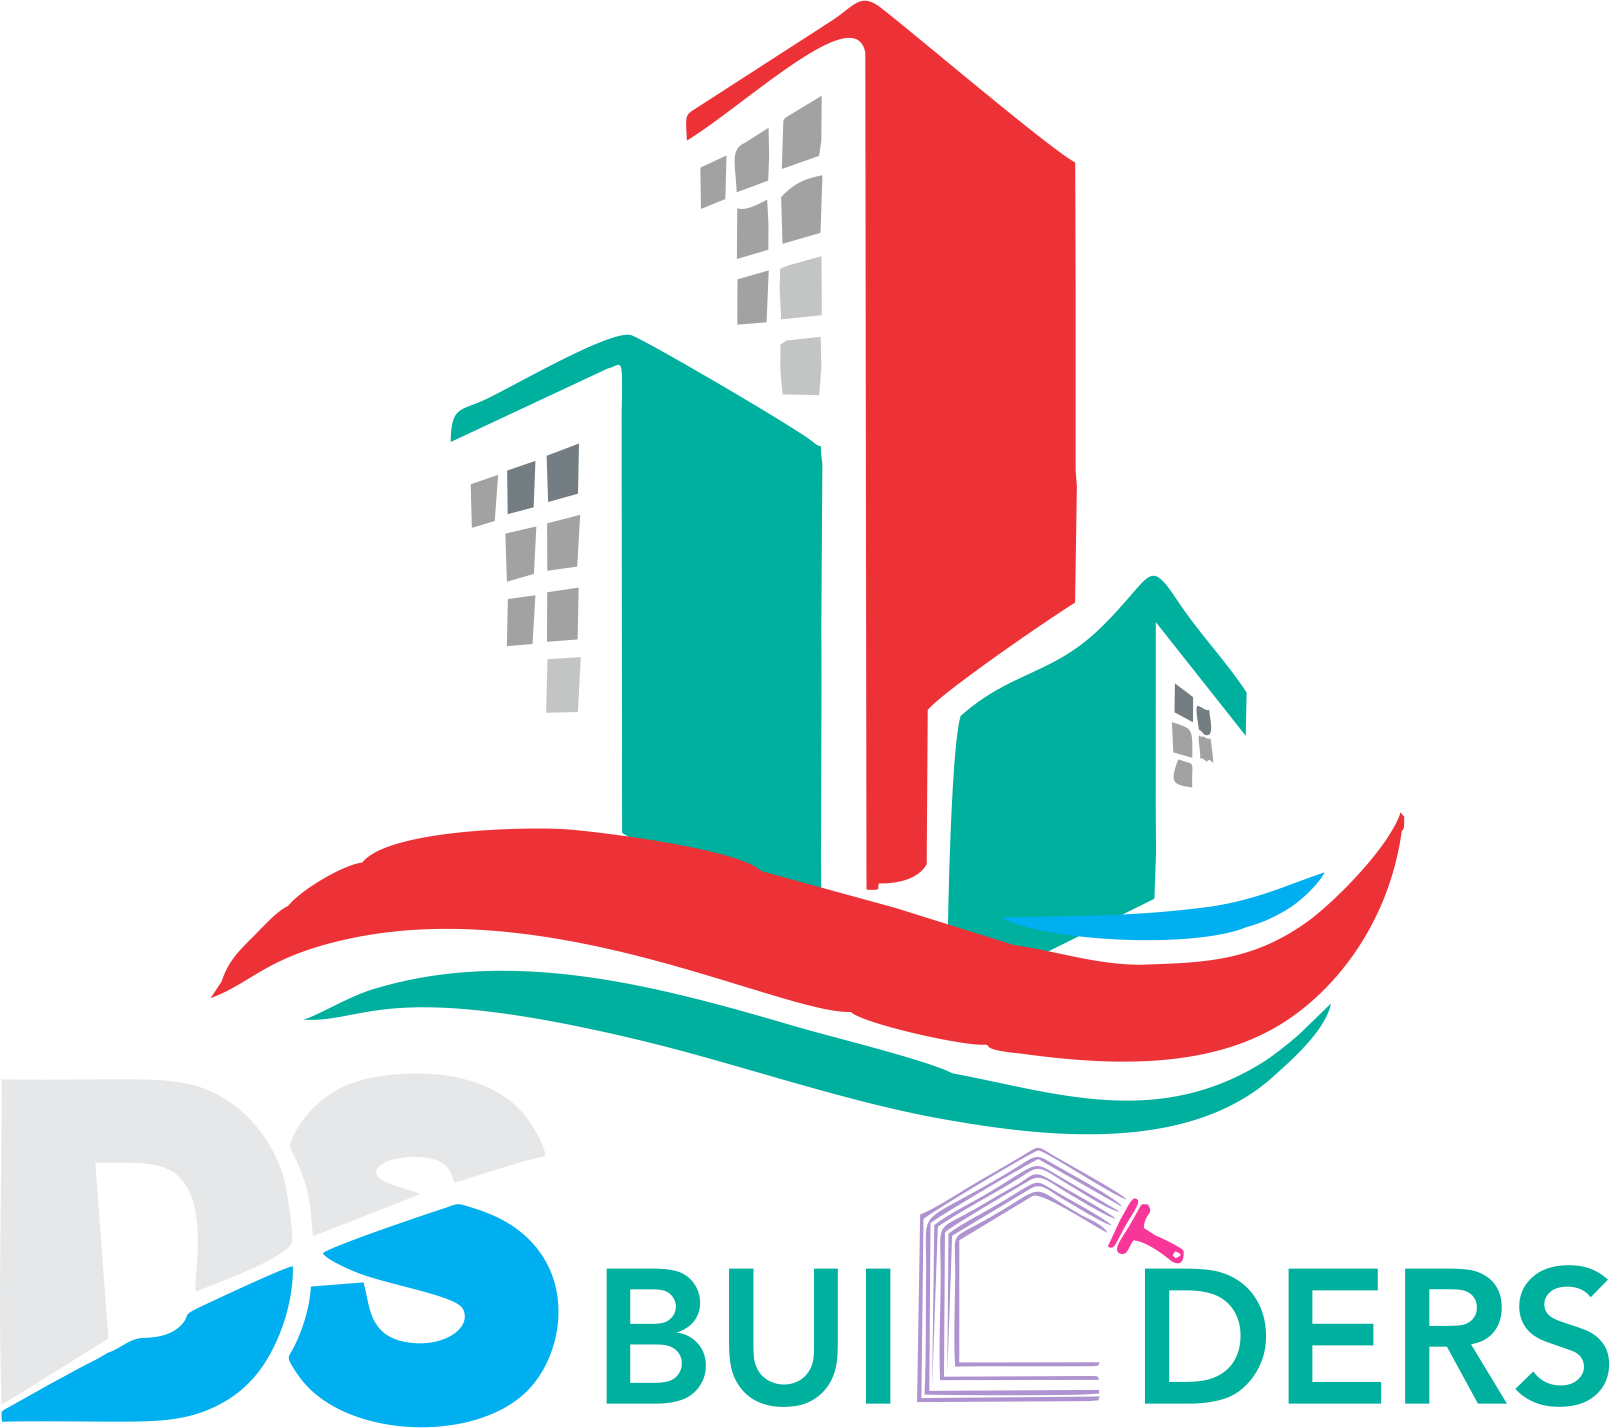 DS Builders